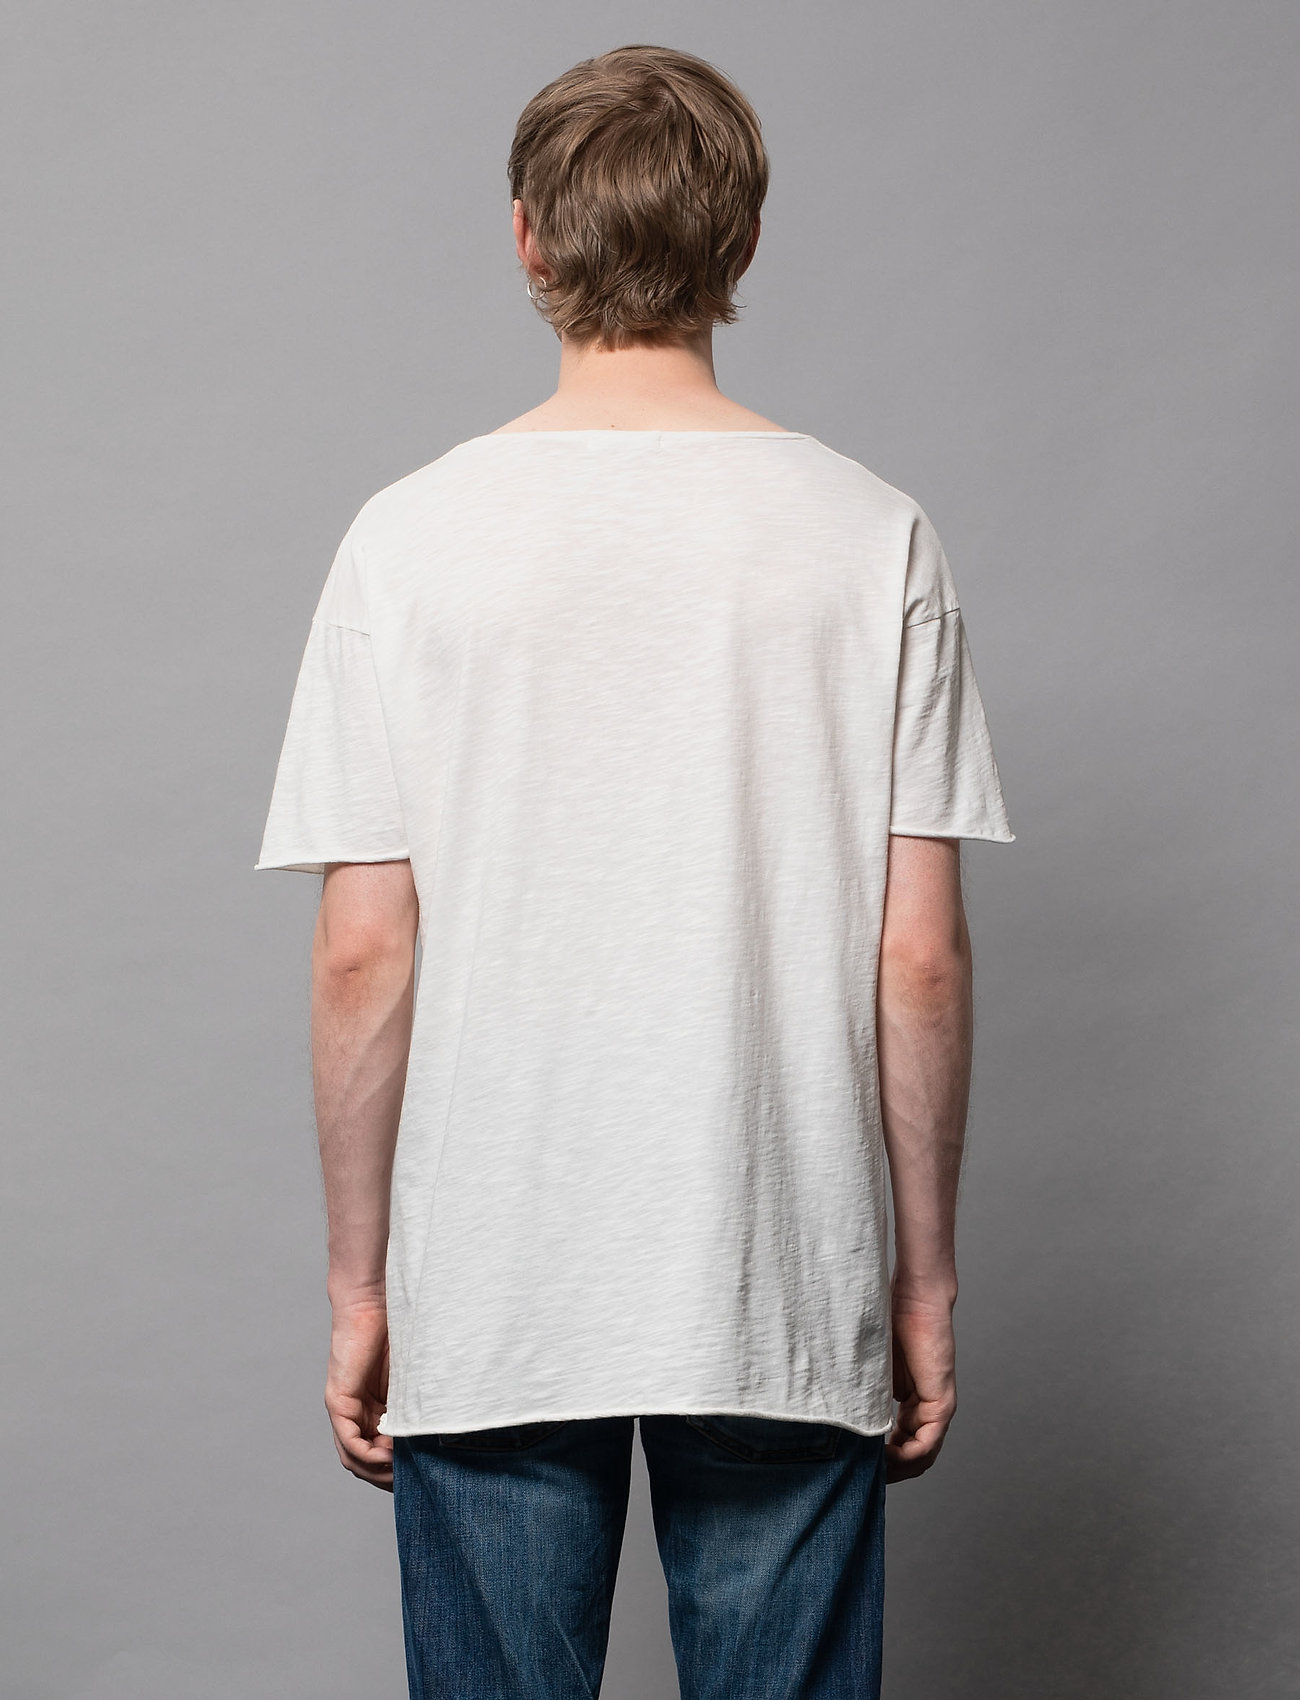 Nudie Jeans - Roger Slub - basic t-shirts - offwhite - 4